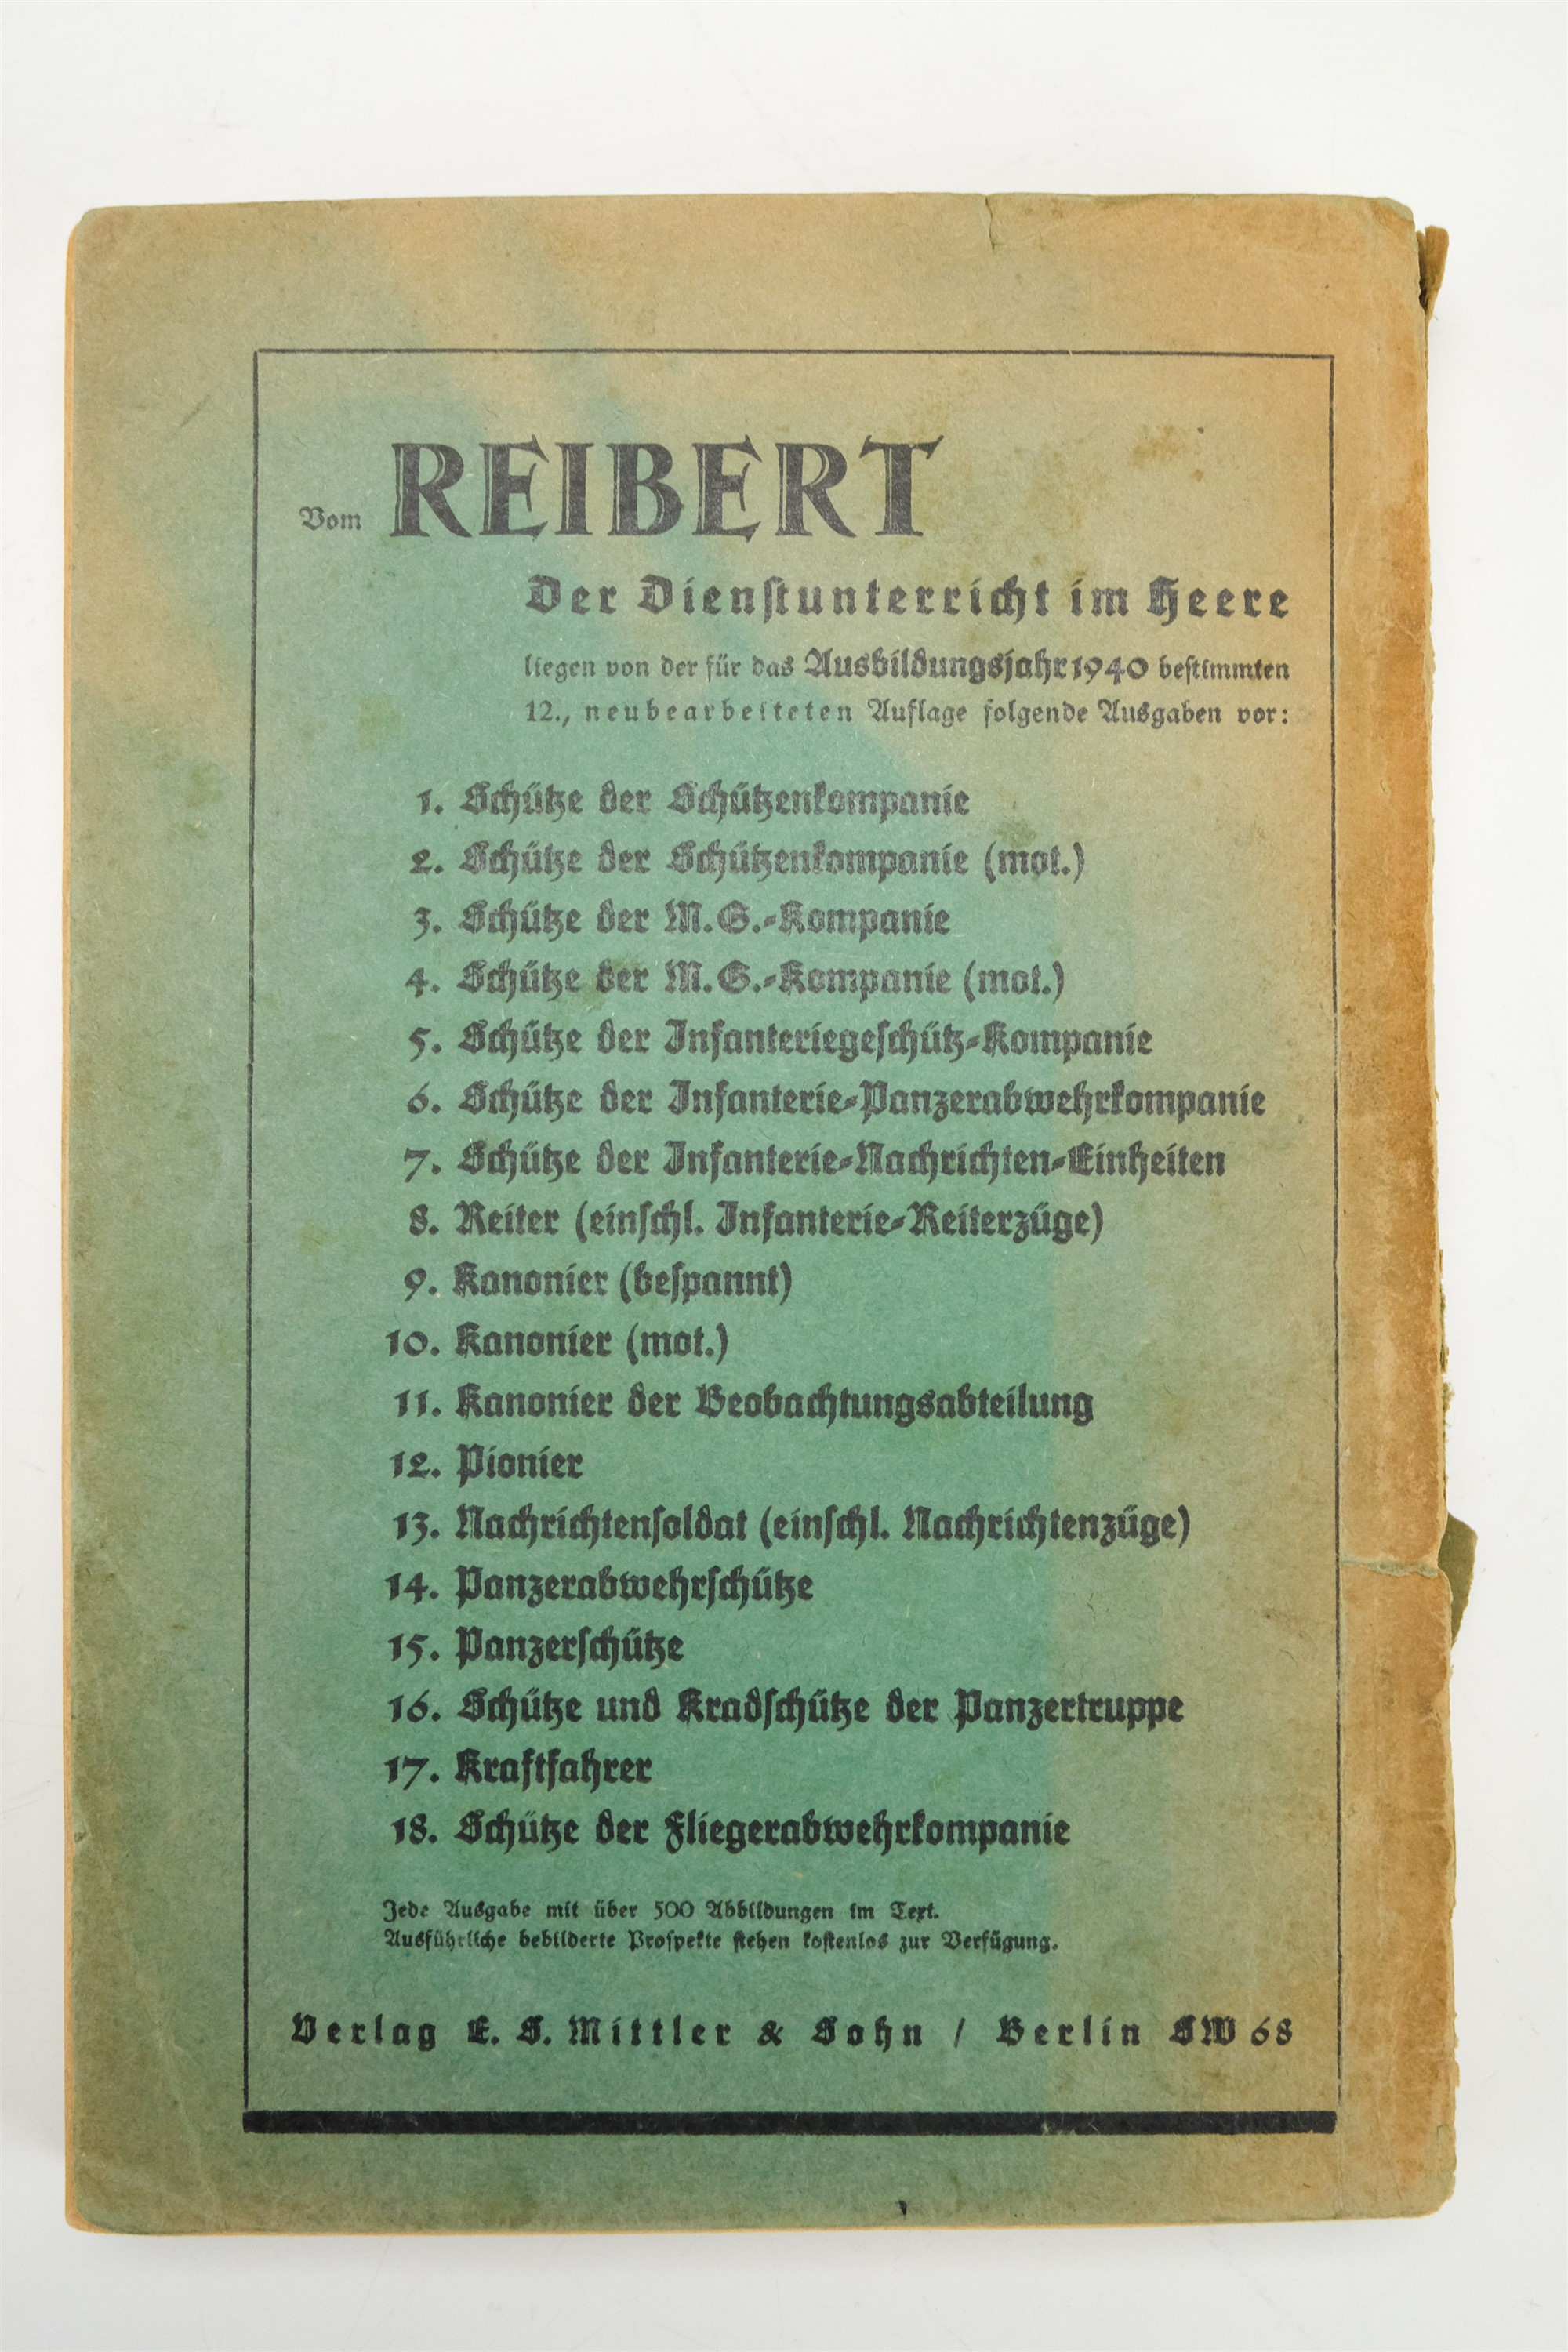 A 1940 German Third Reich army handbook "Der Dienst Unterricht in Heere" - Image 5 of 5